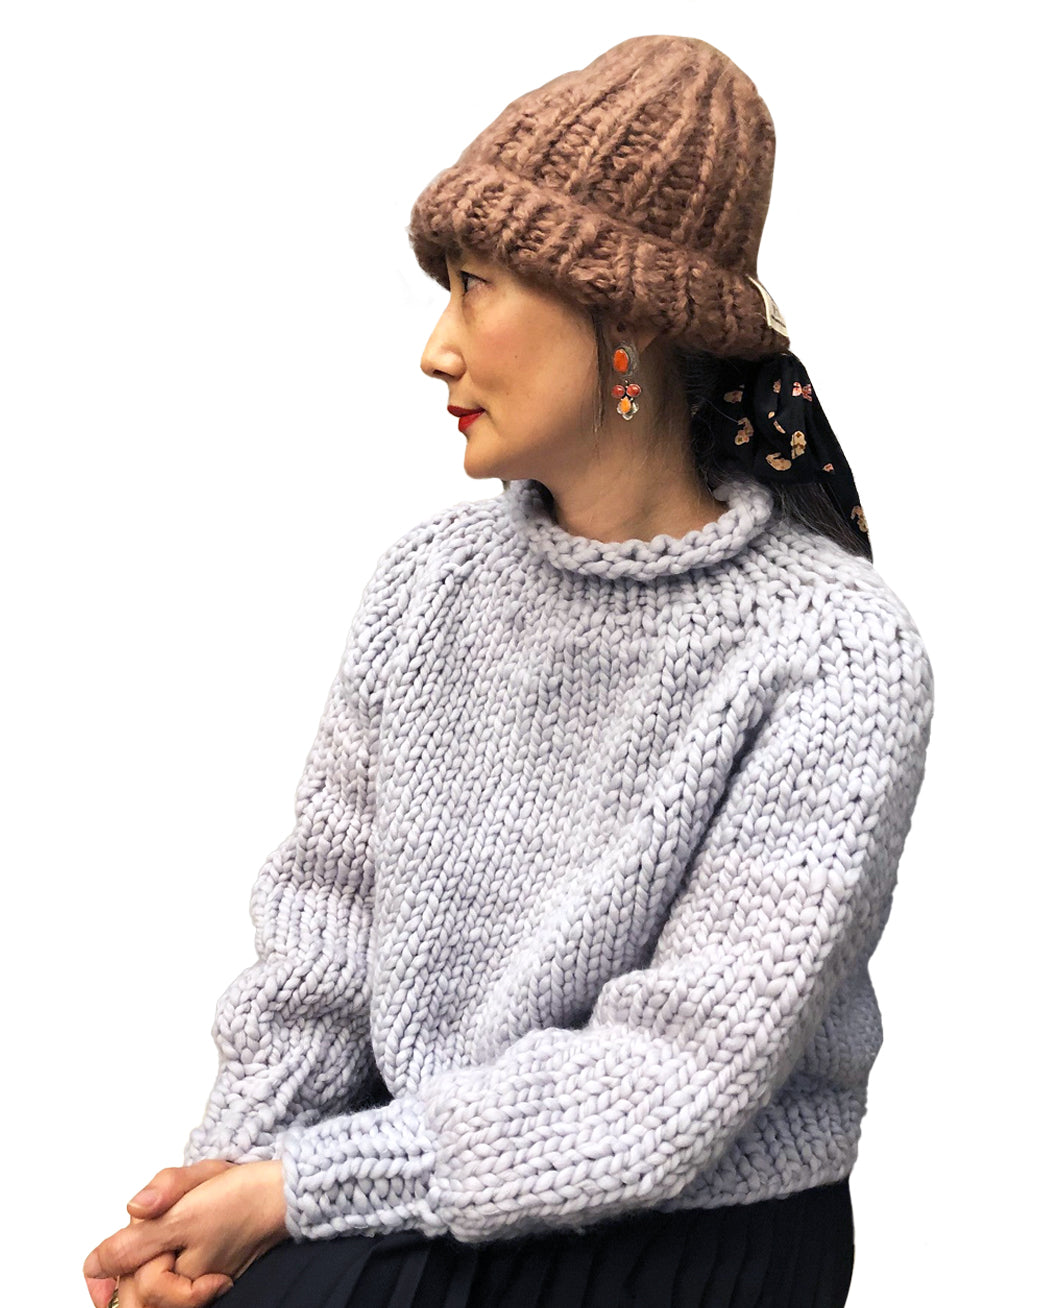 Top-Down Sweater - Merino